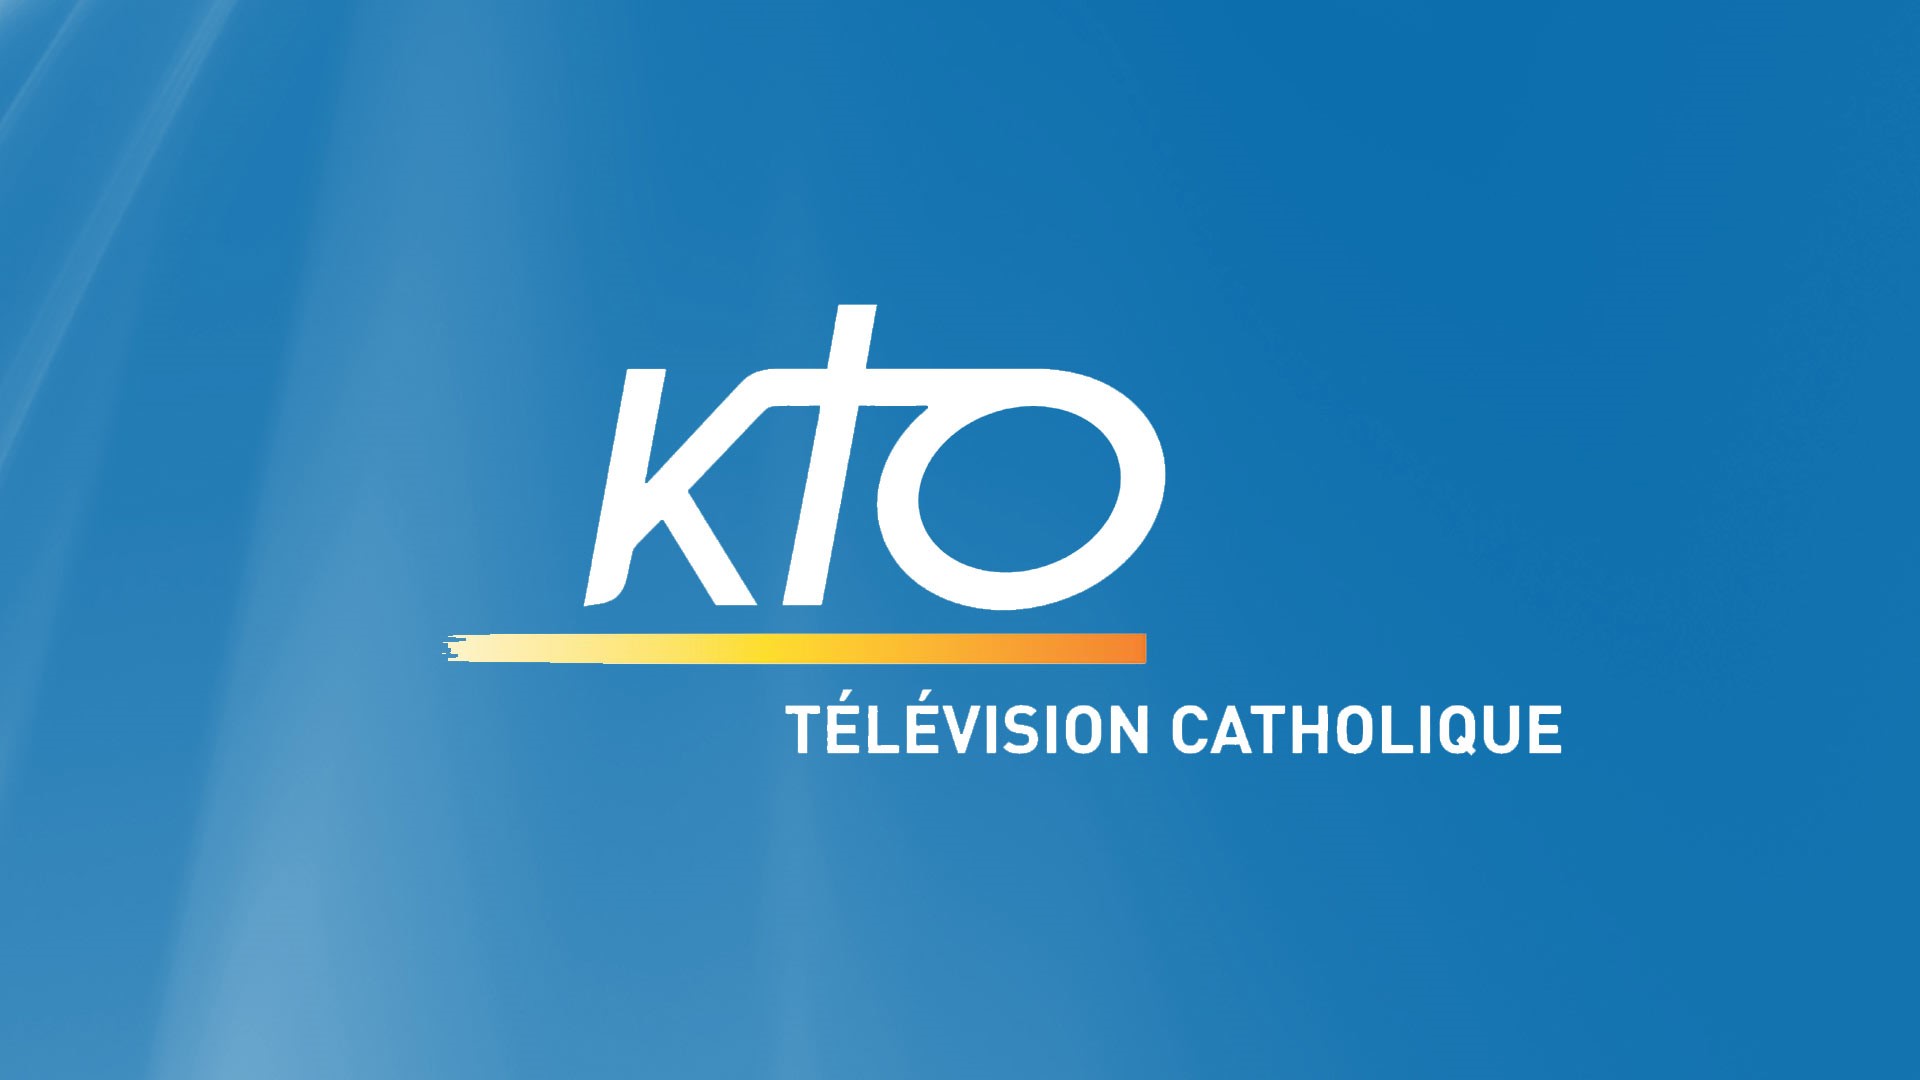 Assemblée plénière des évêques de France: les grands temps forts sur KTO